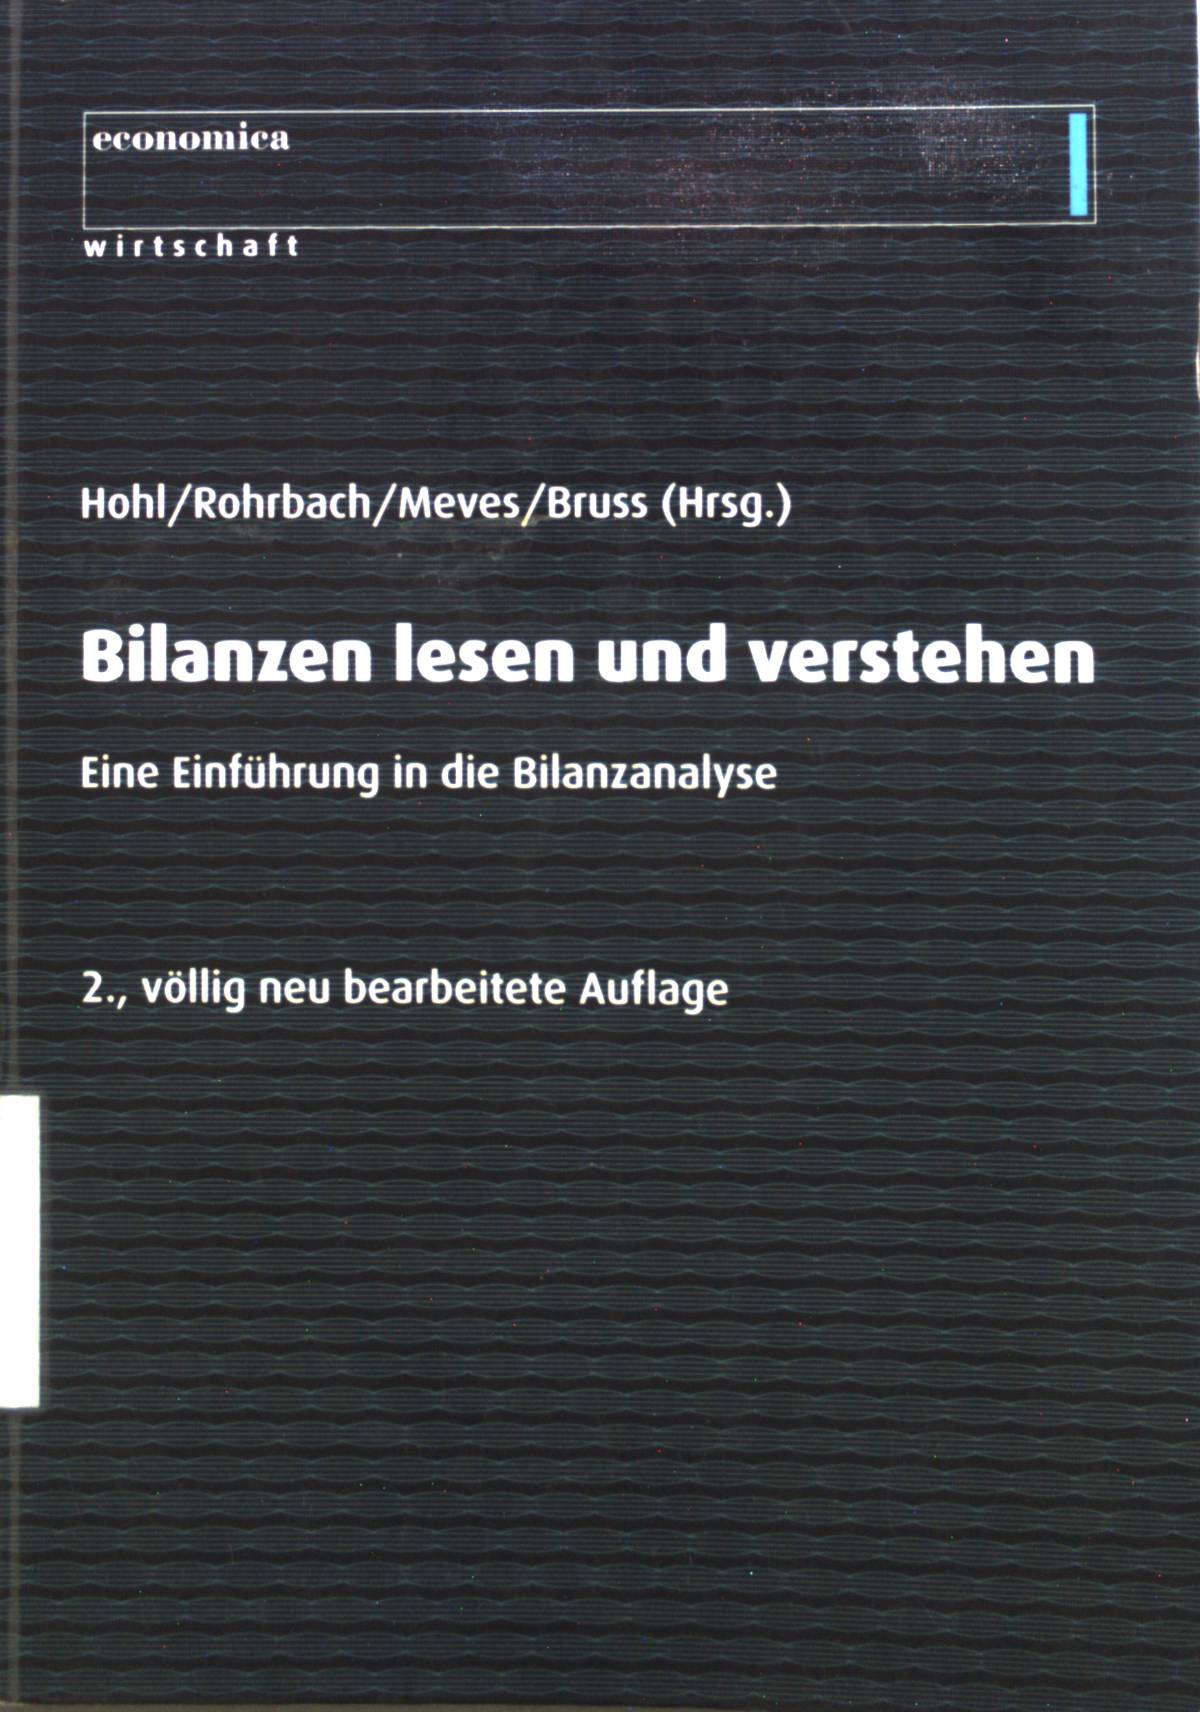 Bilanzen - lesen und verstehen : Eine Einführung in die Bilanzanalyse.  2., völlig neu bearb. Aufl. - Hohl, Wolfgang, Hans-Dirk Rohrbach Oliver Meves u. a.